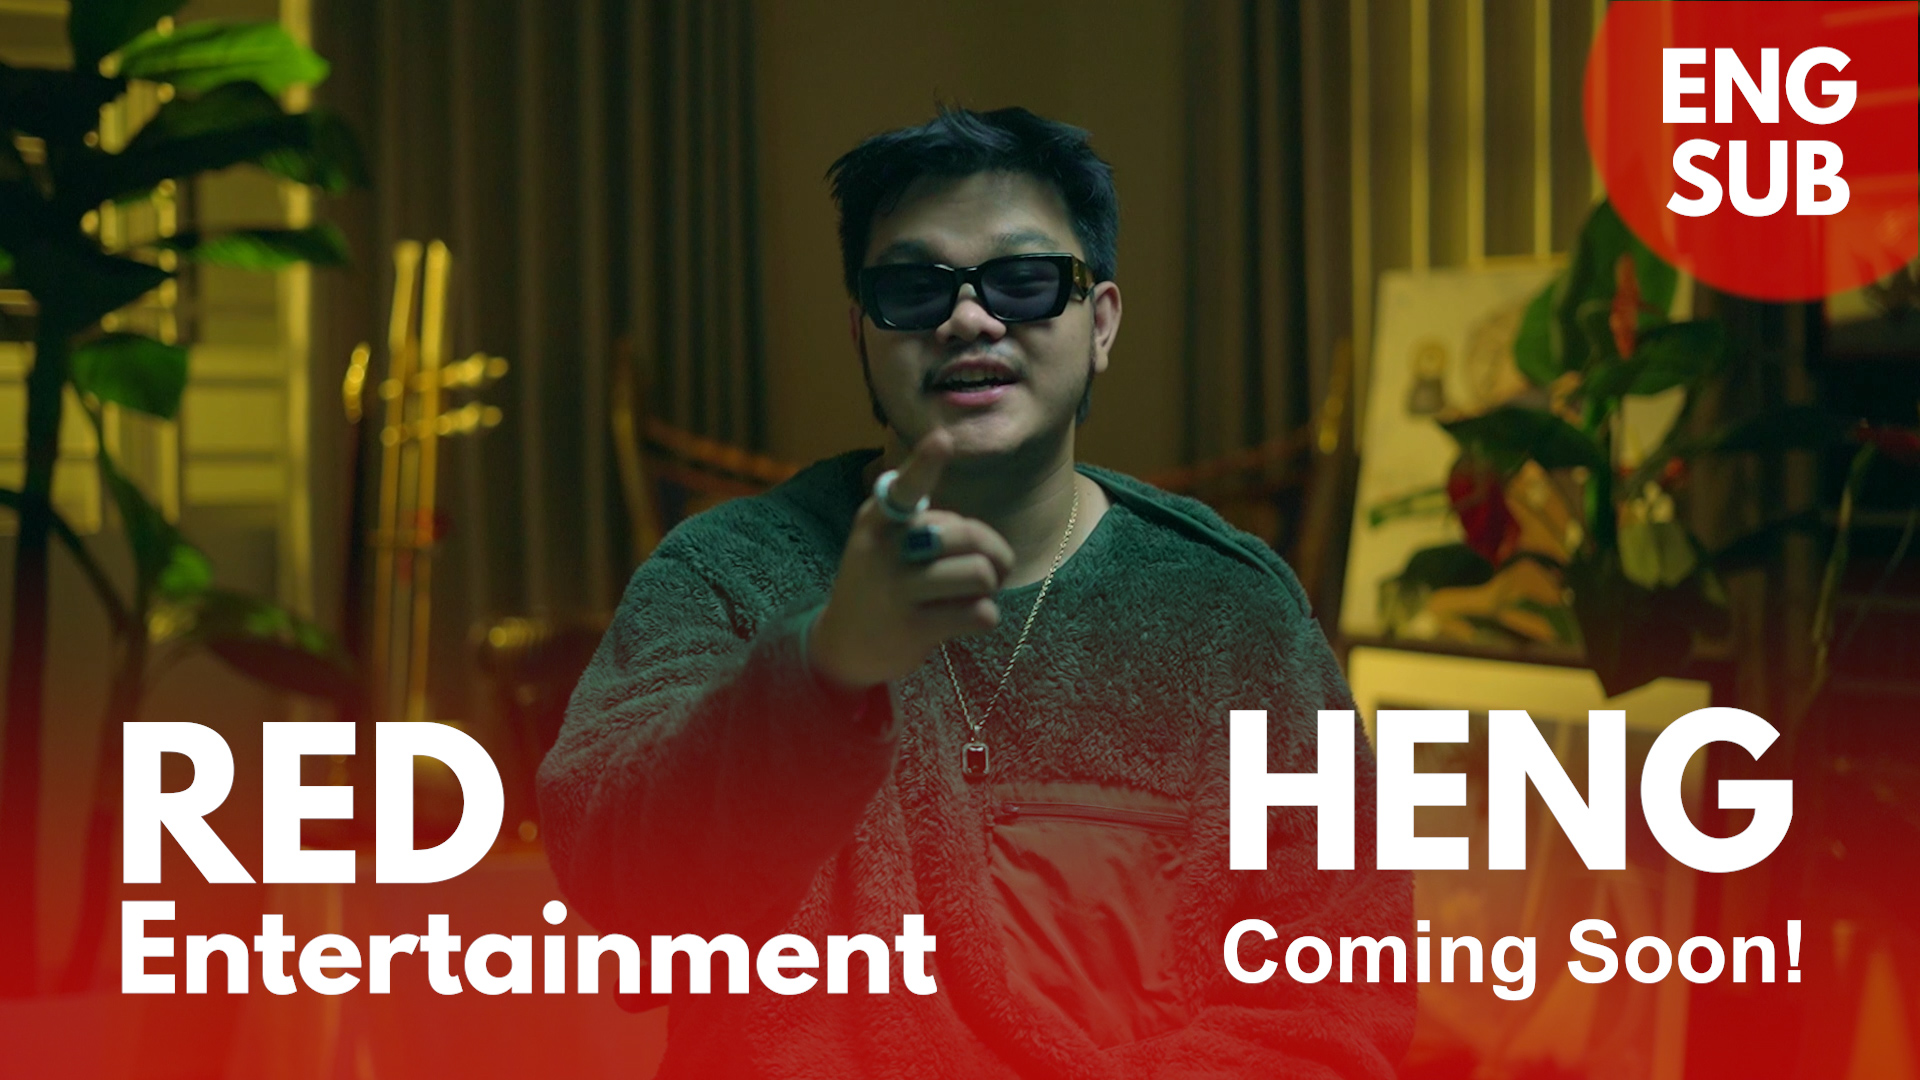 HENG នឹងធ្វើការចែករំលែកនូវព័ត៌មានដ៏ភ្ញាក់ផ្អើលមួយសម្រាប់អ្នកគាំទ្រជាមួយ​ RED Entertainment ក្នុងពេលឆាប់ៗនេះ!